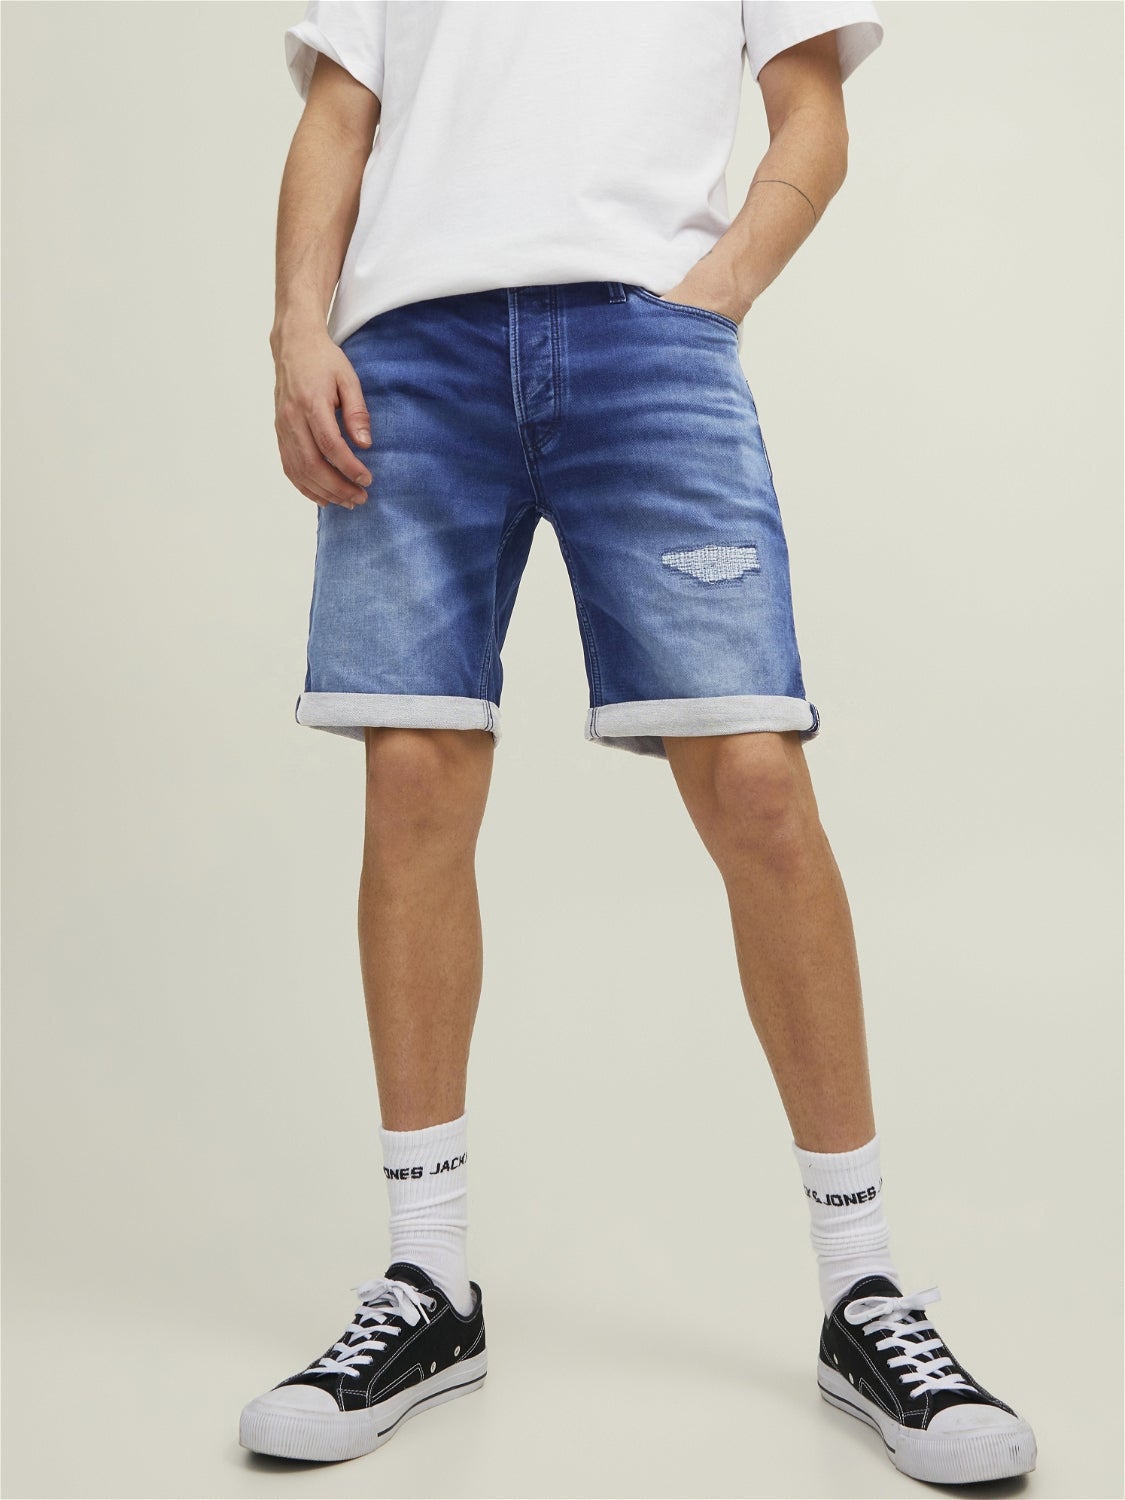 Jack & Jones Shorts jeans Blau S Rabatt 57 % HERREN Jeans Basisch 